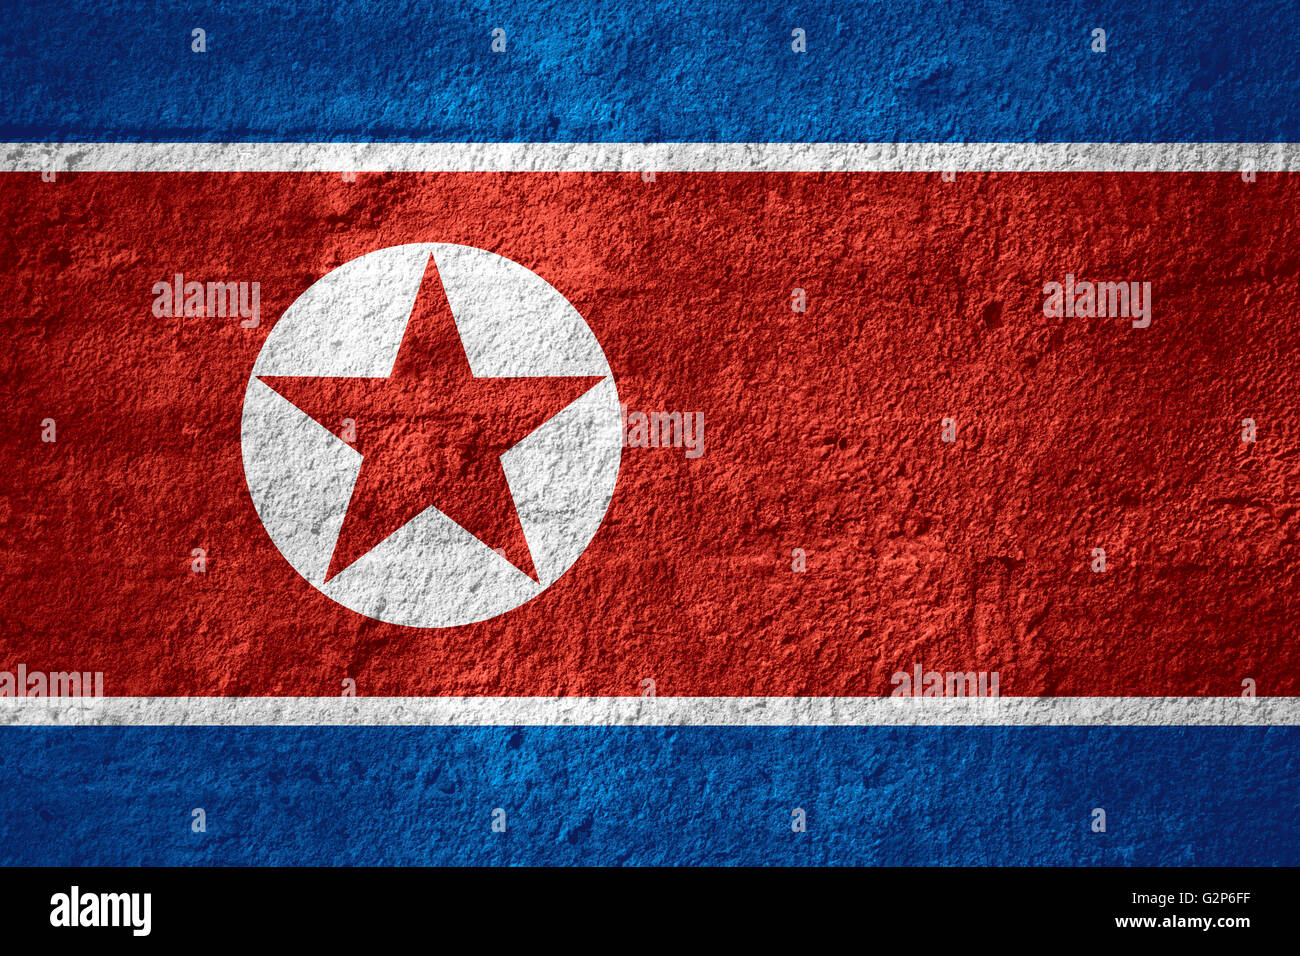 Bandiera della Corea del Nord o Corea del Nord banner sulla trama ruvida Foto Stock